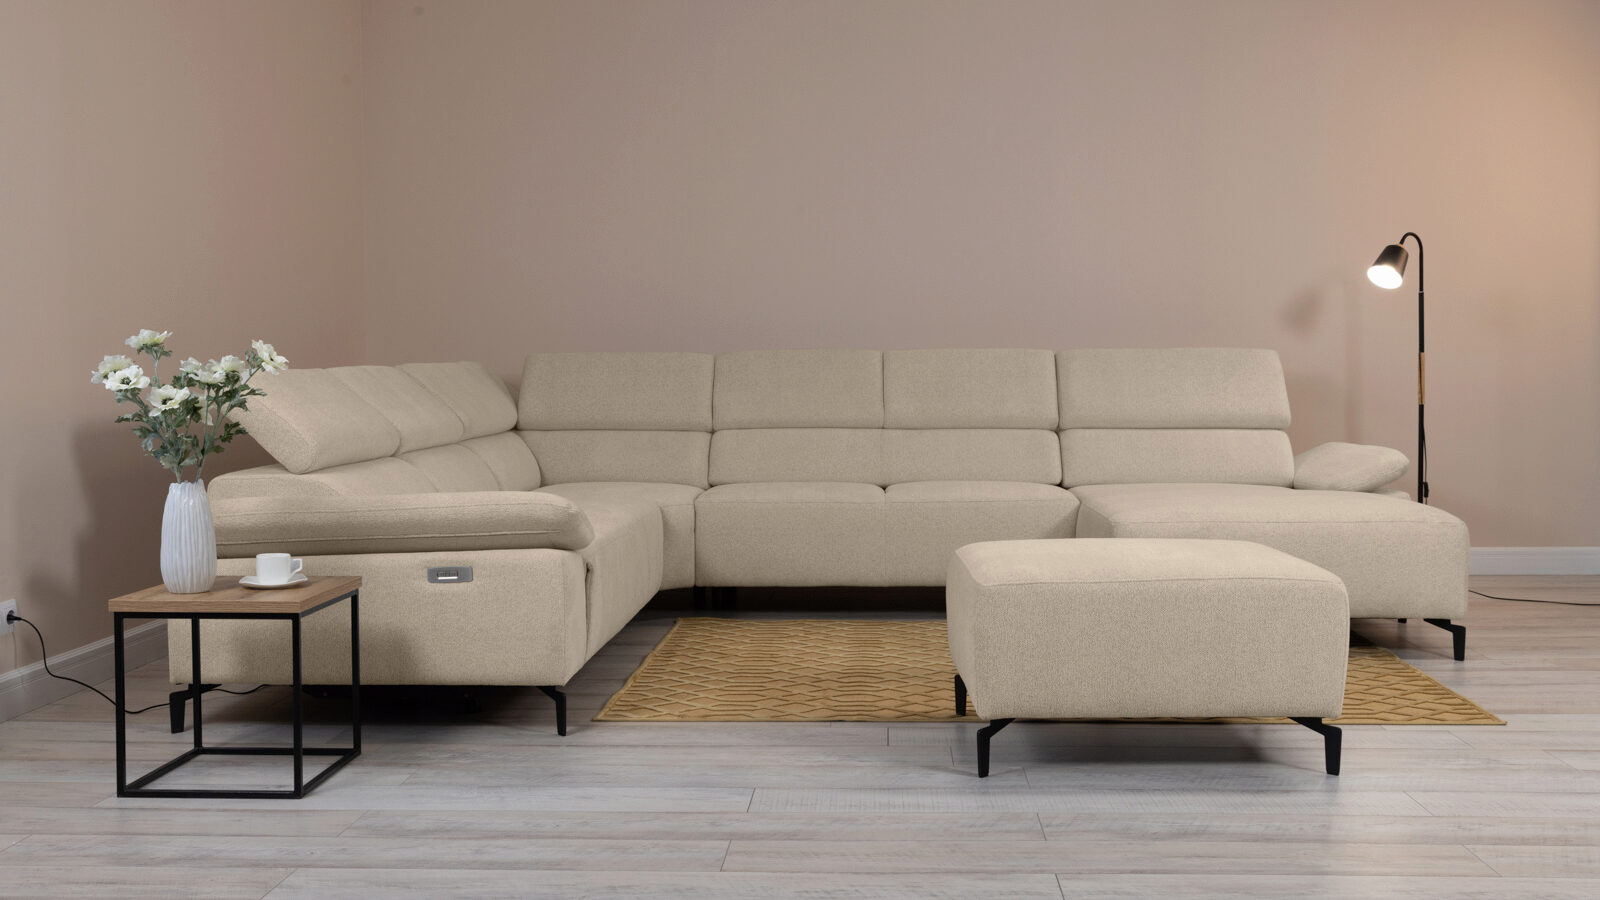 П-образный диван Square new с реклайнером слева прямой диван с реклайнером слева square new